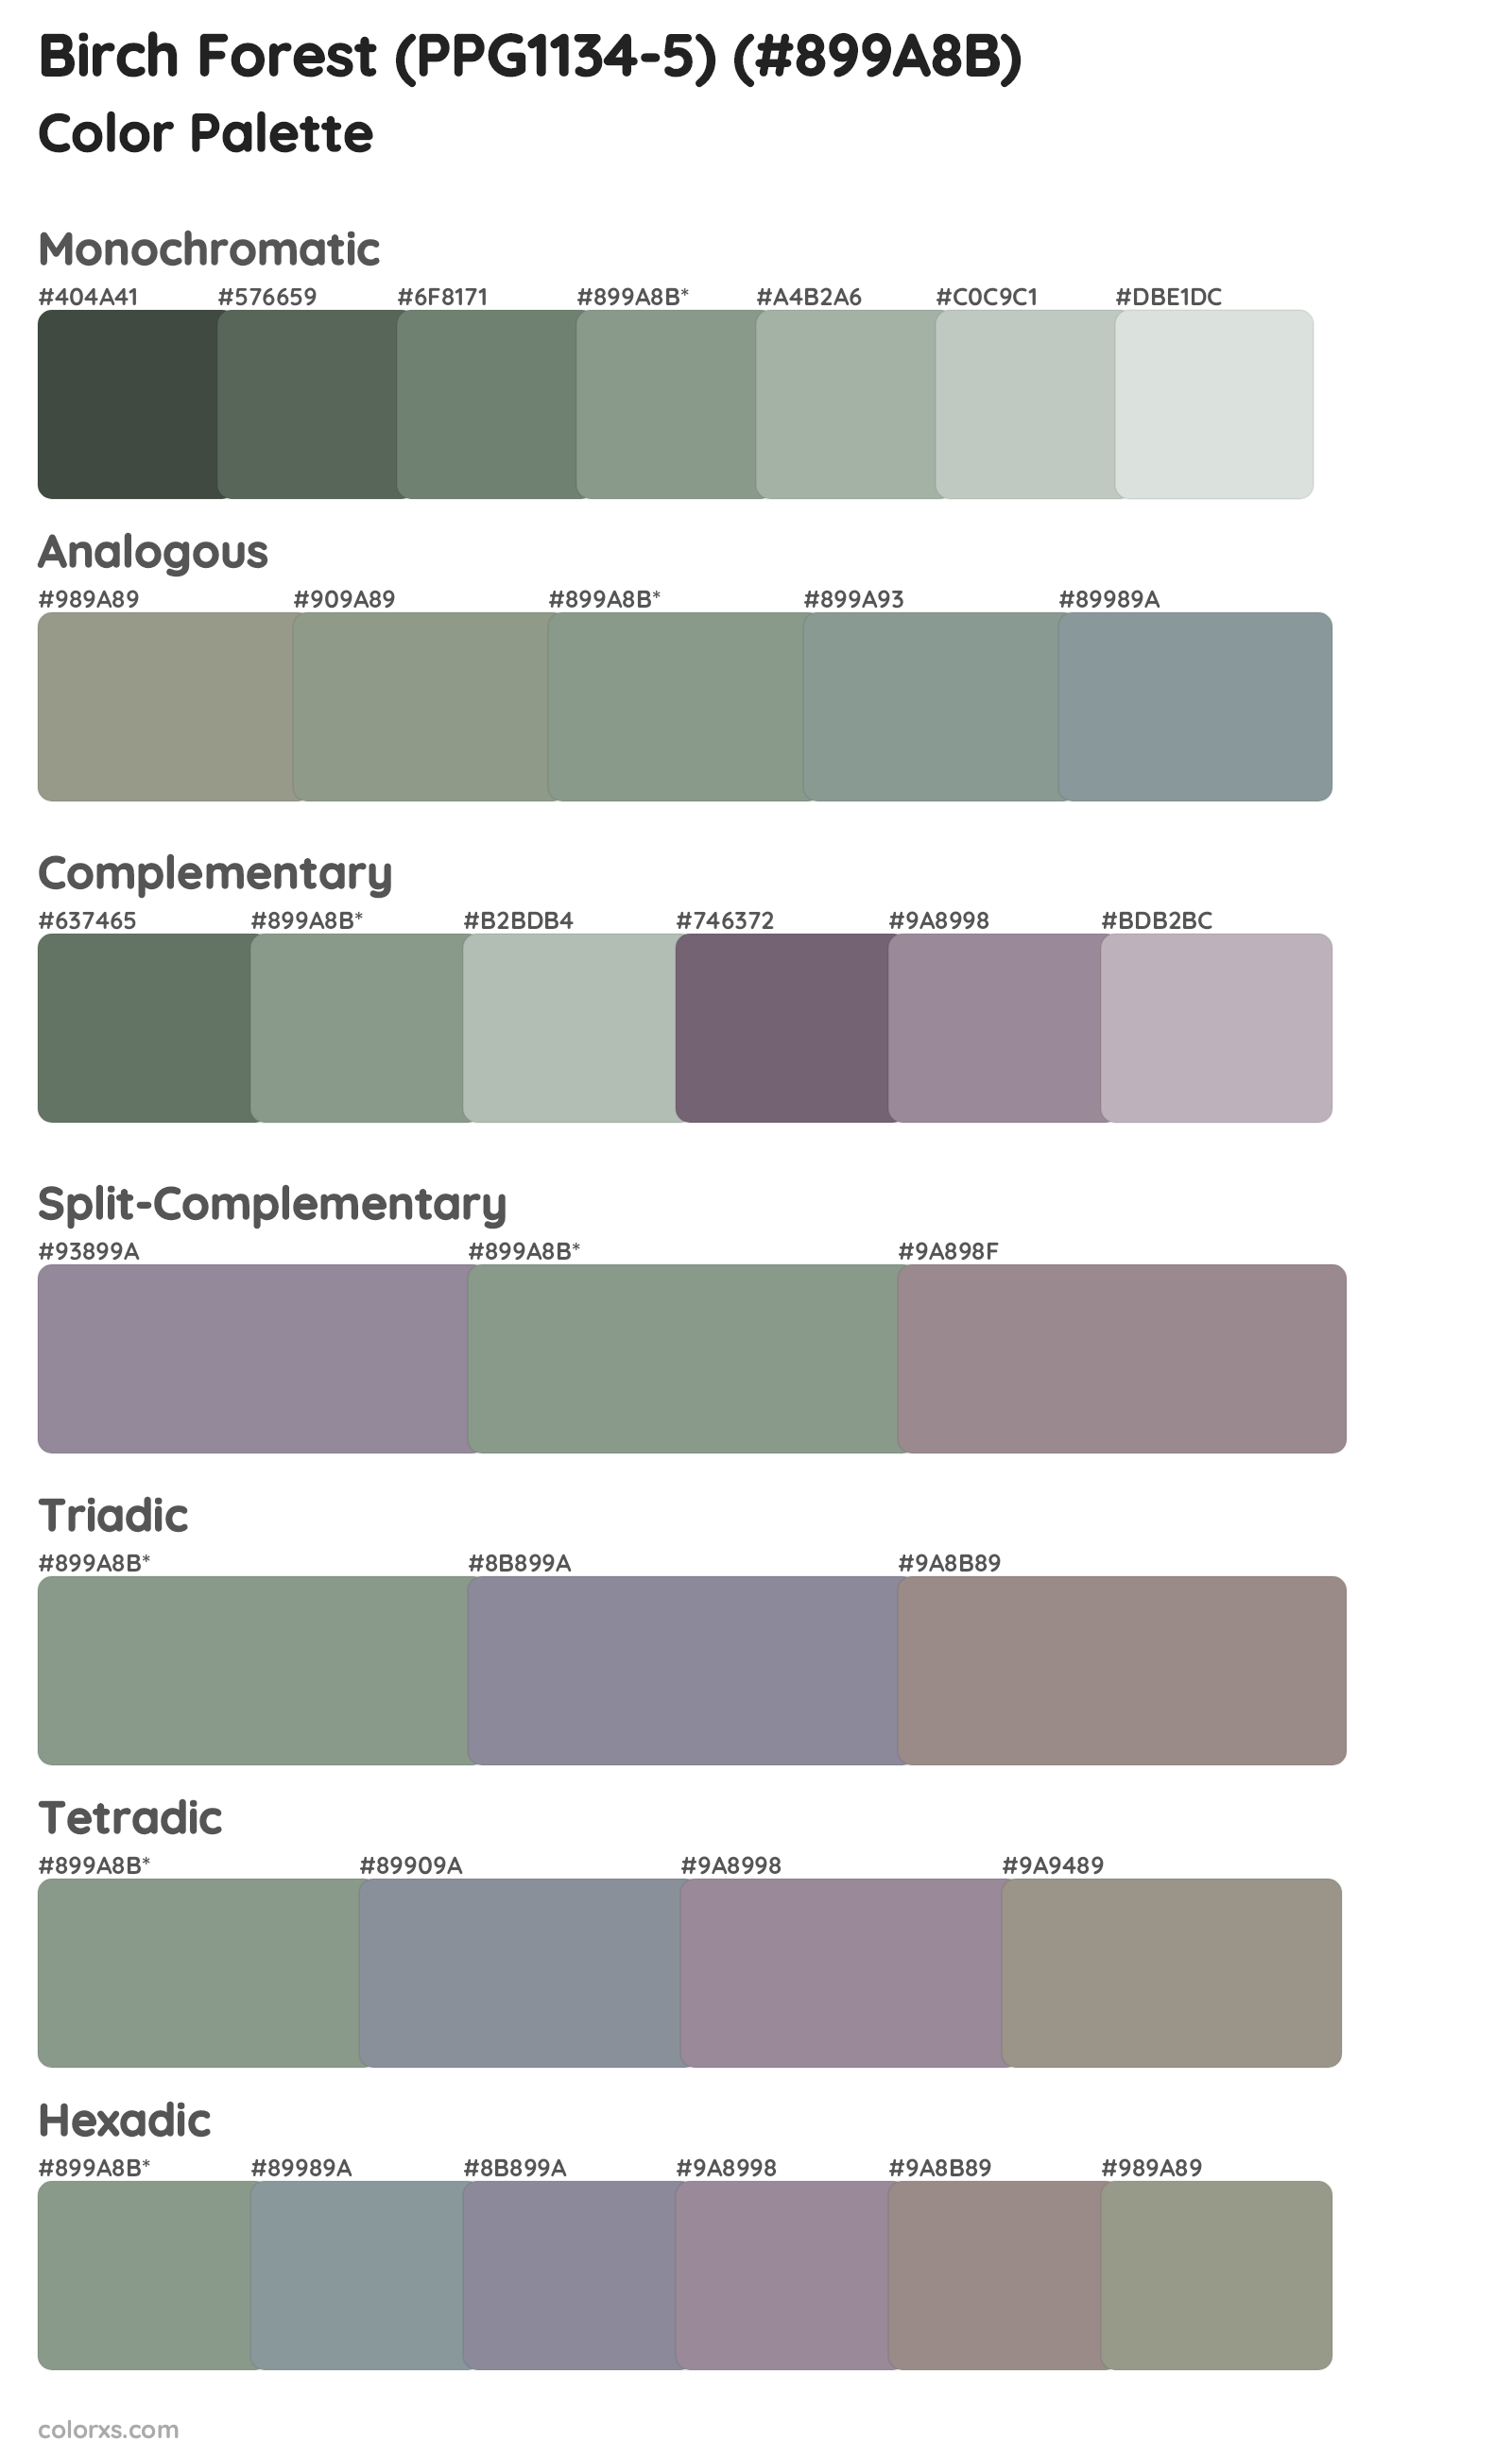 Birch Forest (PPG1134-5) Color Scheme Palettes